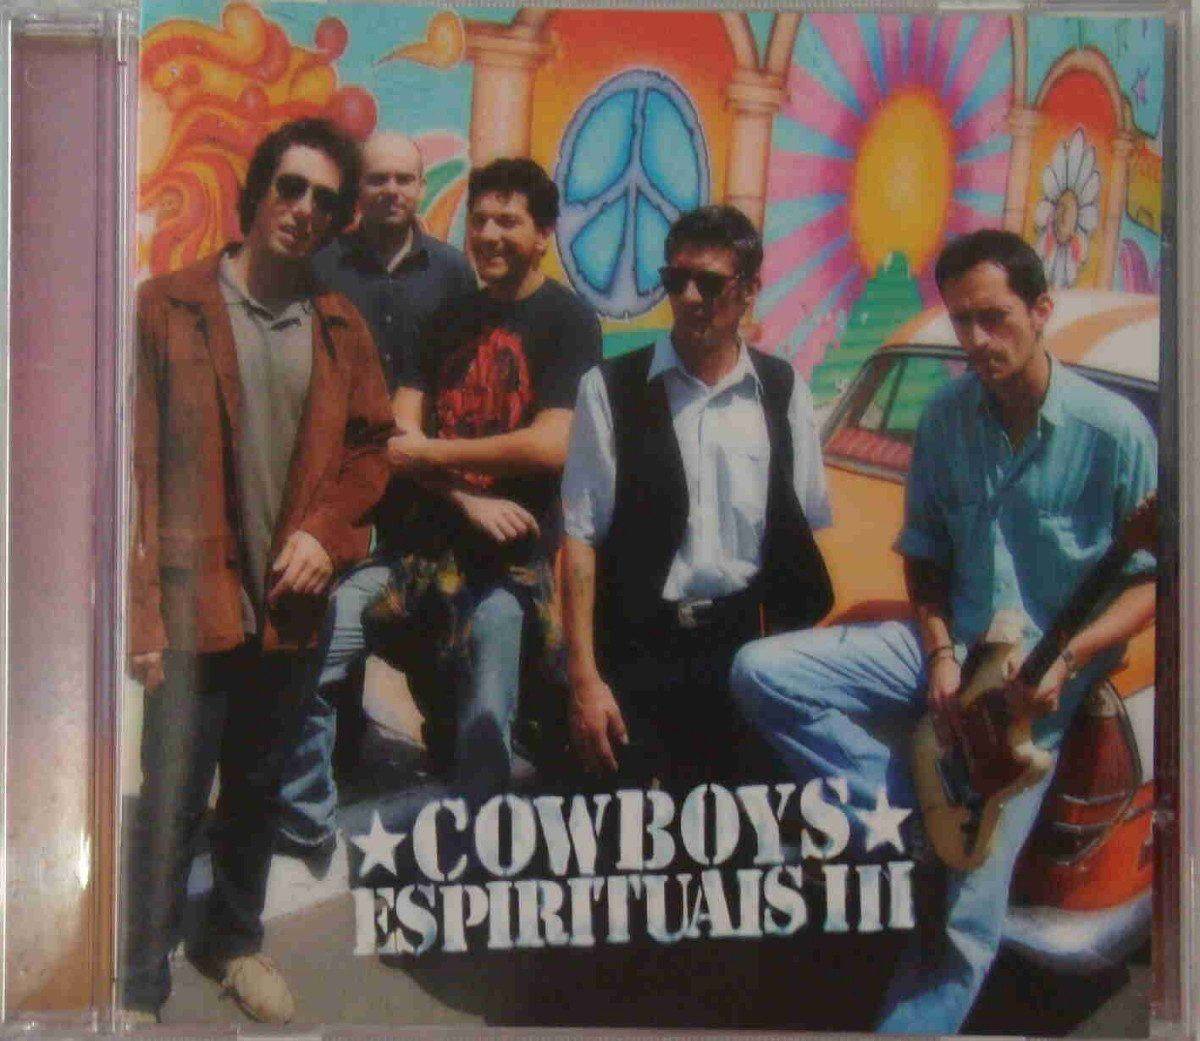 Cowboys Espirituais III